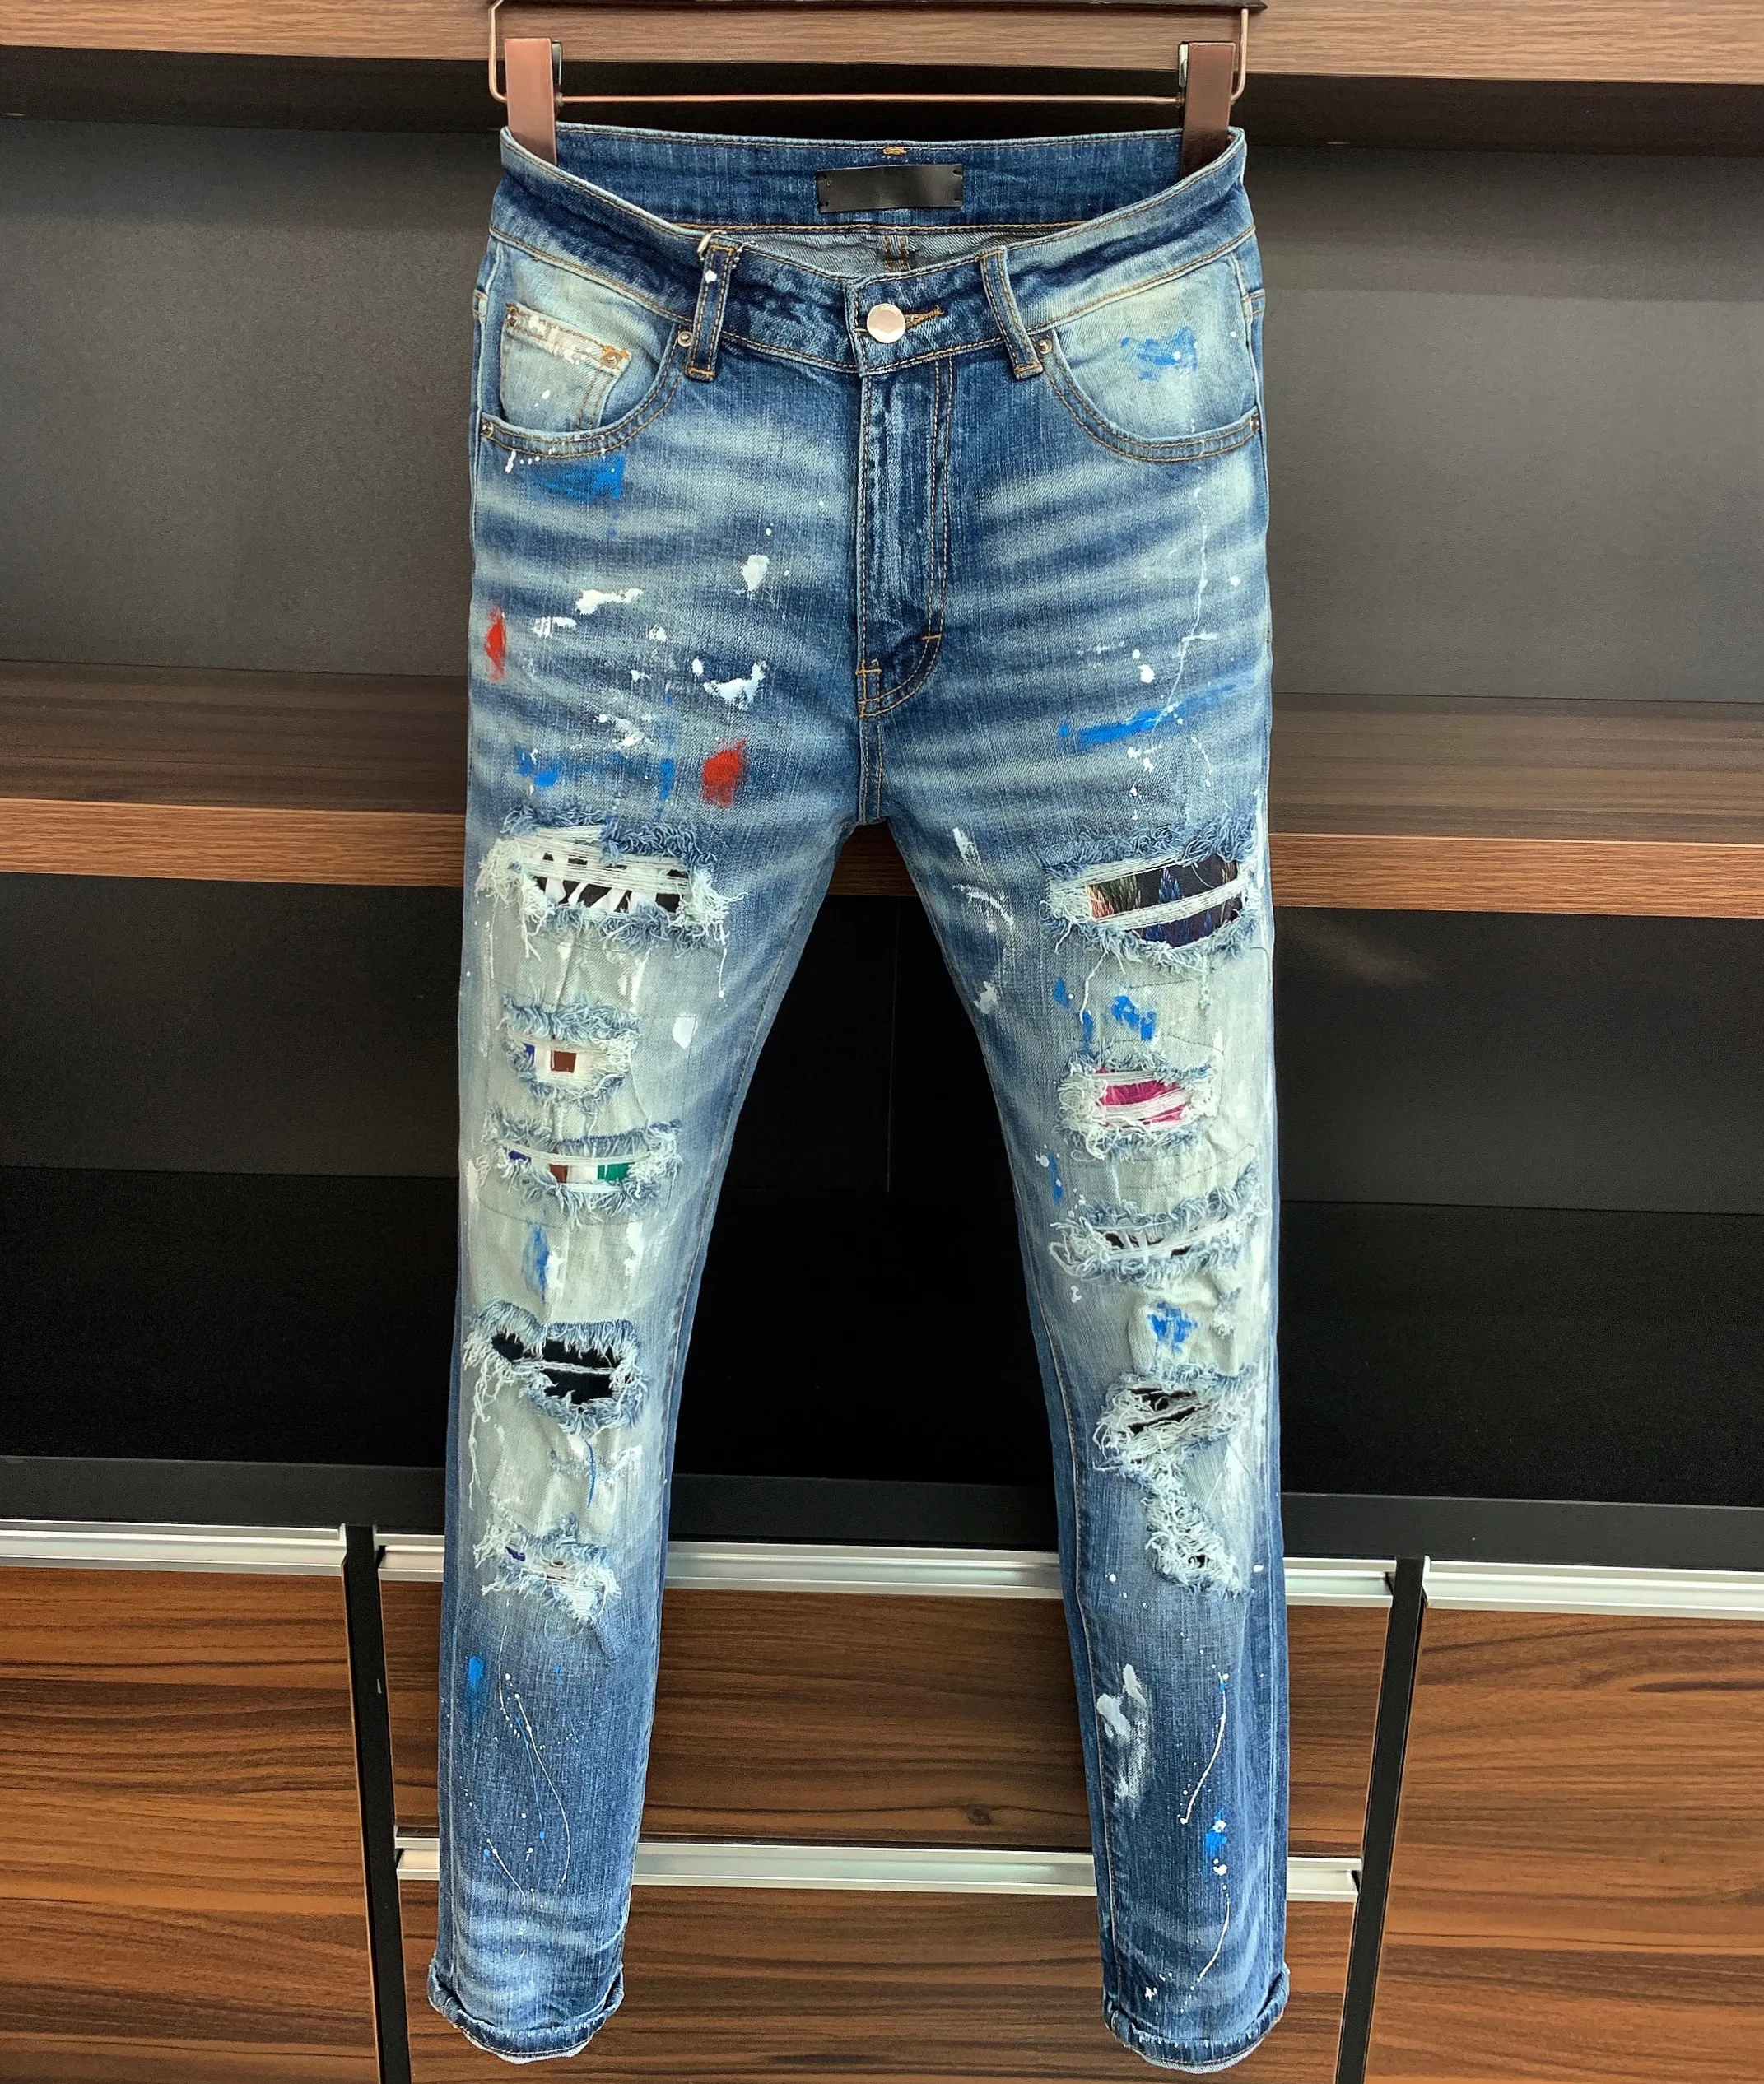 2023 Stilista di moda Jeans da uomo Casual Graffiti Pantaloni lunghi Jeans Rock Revival Pantaloni dritti slim denim elastico Fit Moto Biker 221c